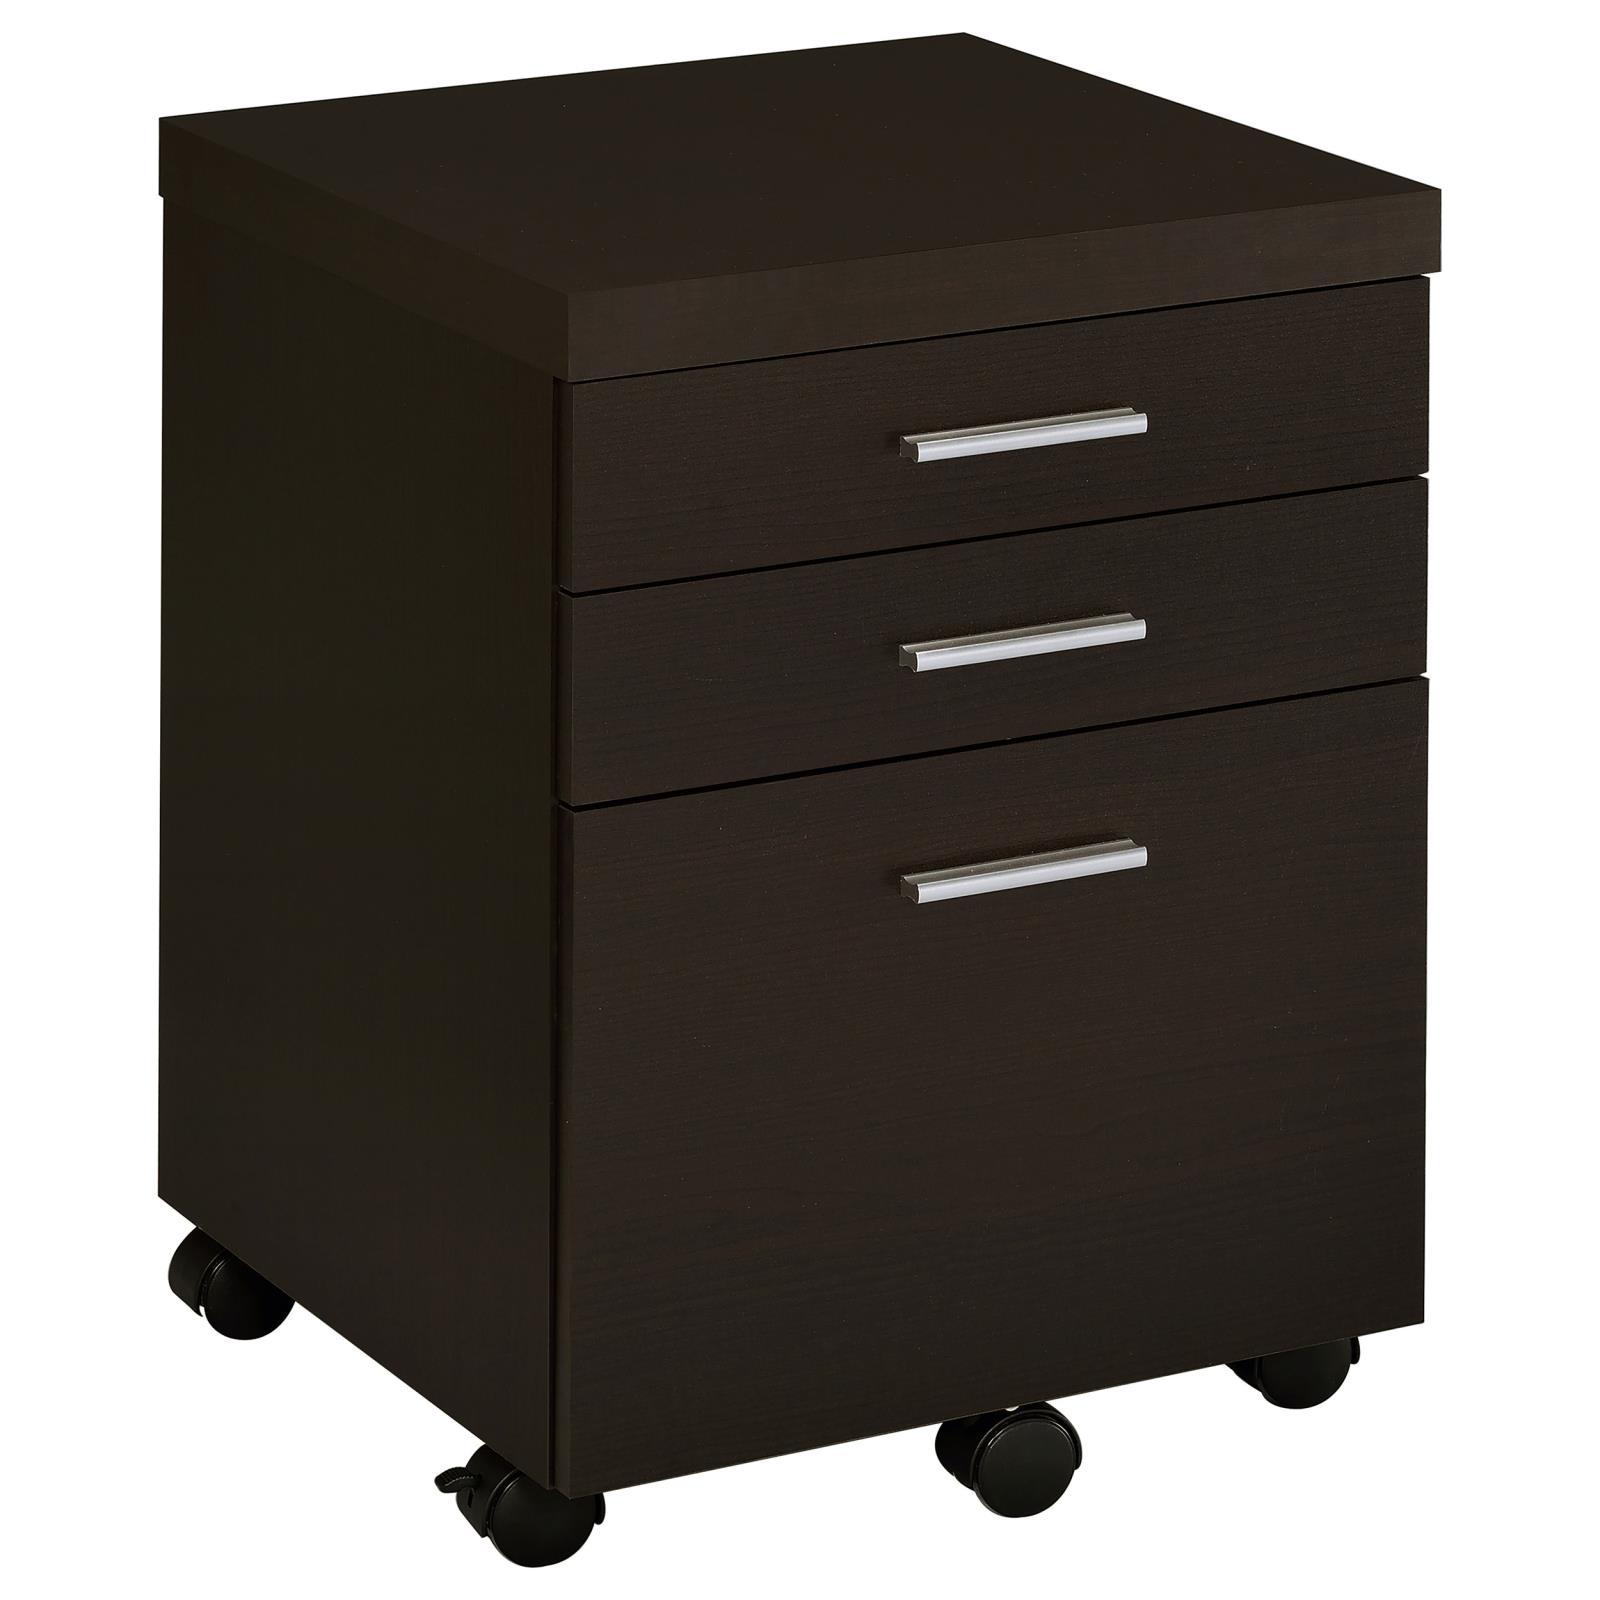 Coaster Furniture Office Desks L-Shaped Desks 800891-S4